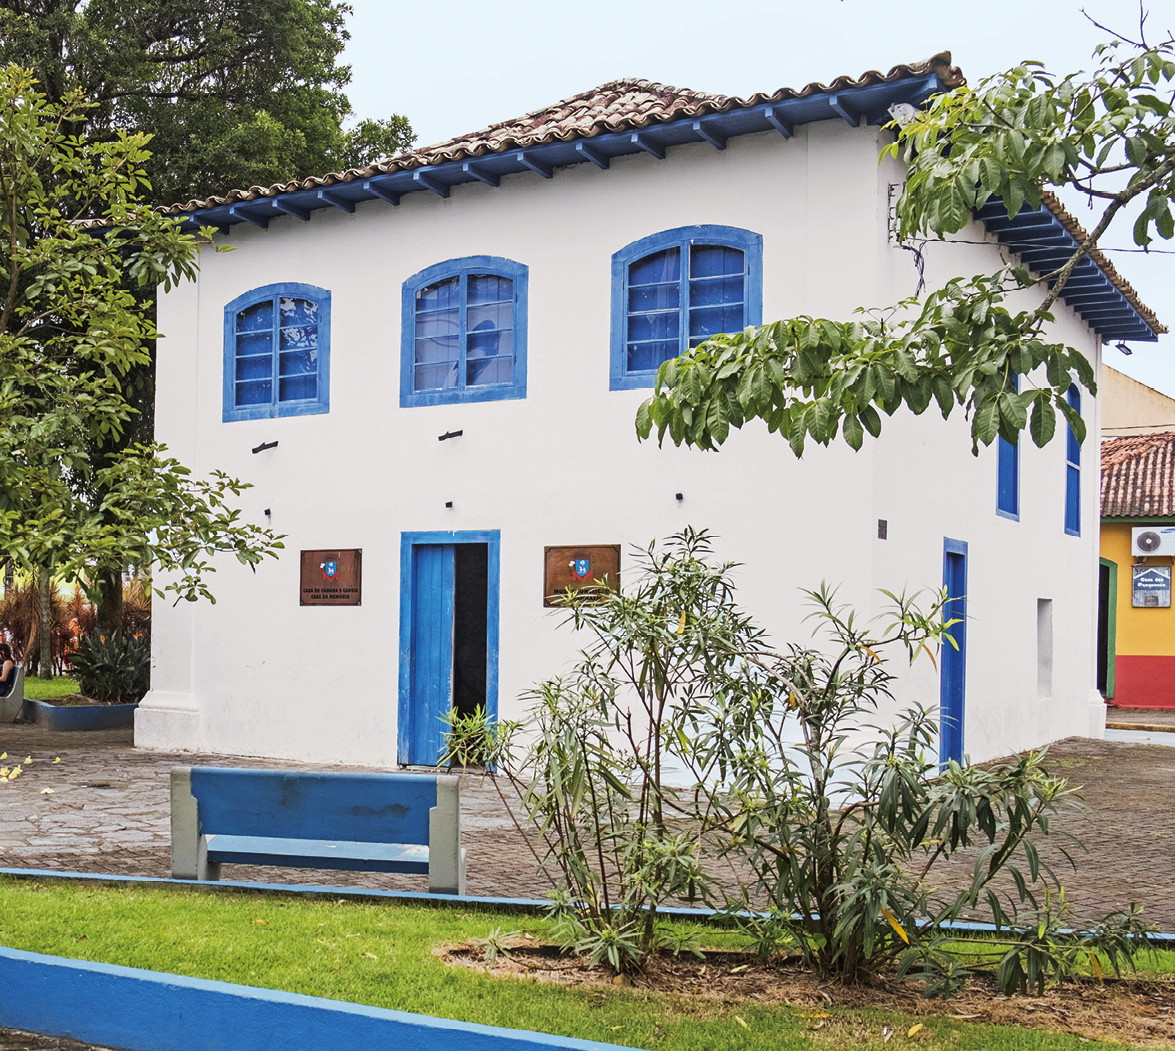 Fotografia. Fachada de uma casa de paredes brancas, janelas e porta azuis, e um telhado triangular, com algumas árvores ao redor.